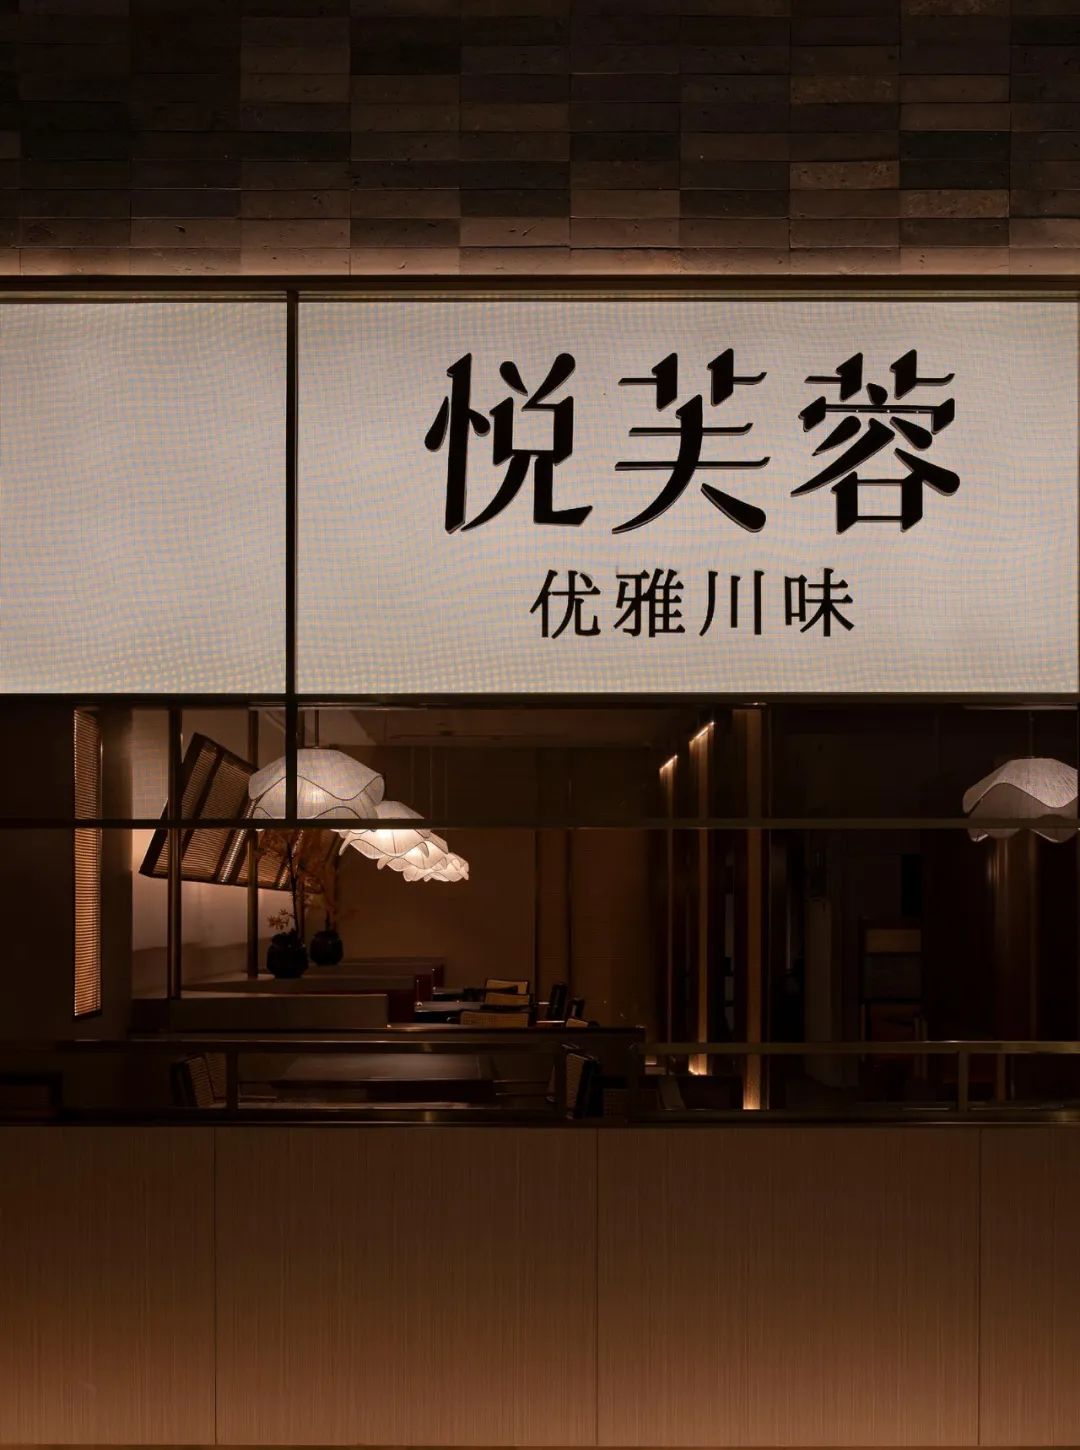 郑州餐饮设计推荐悦芙蓉新派川菜餐厅装修案例(图1)